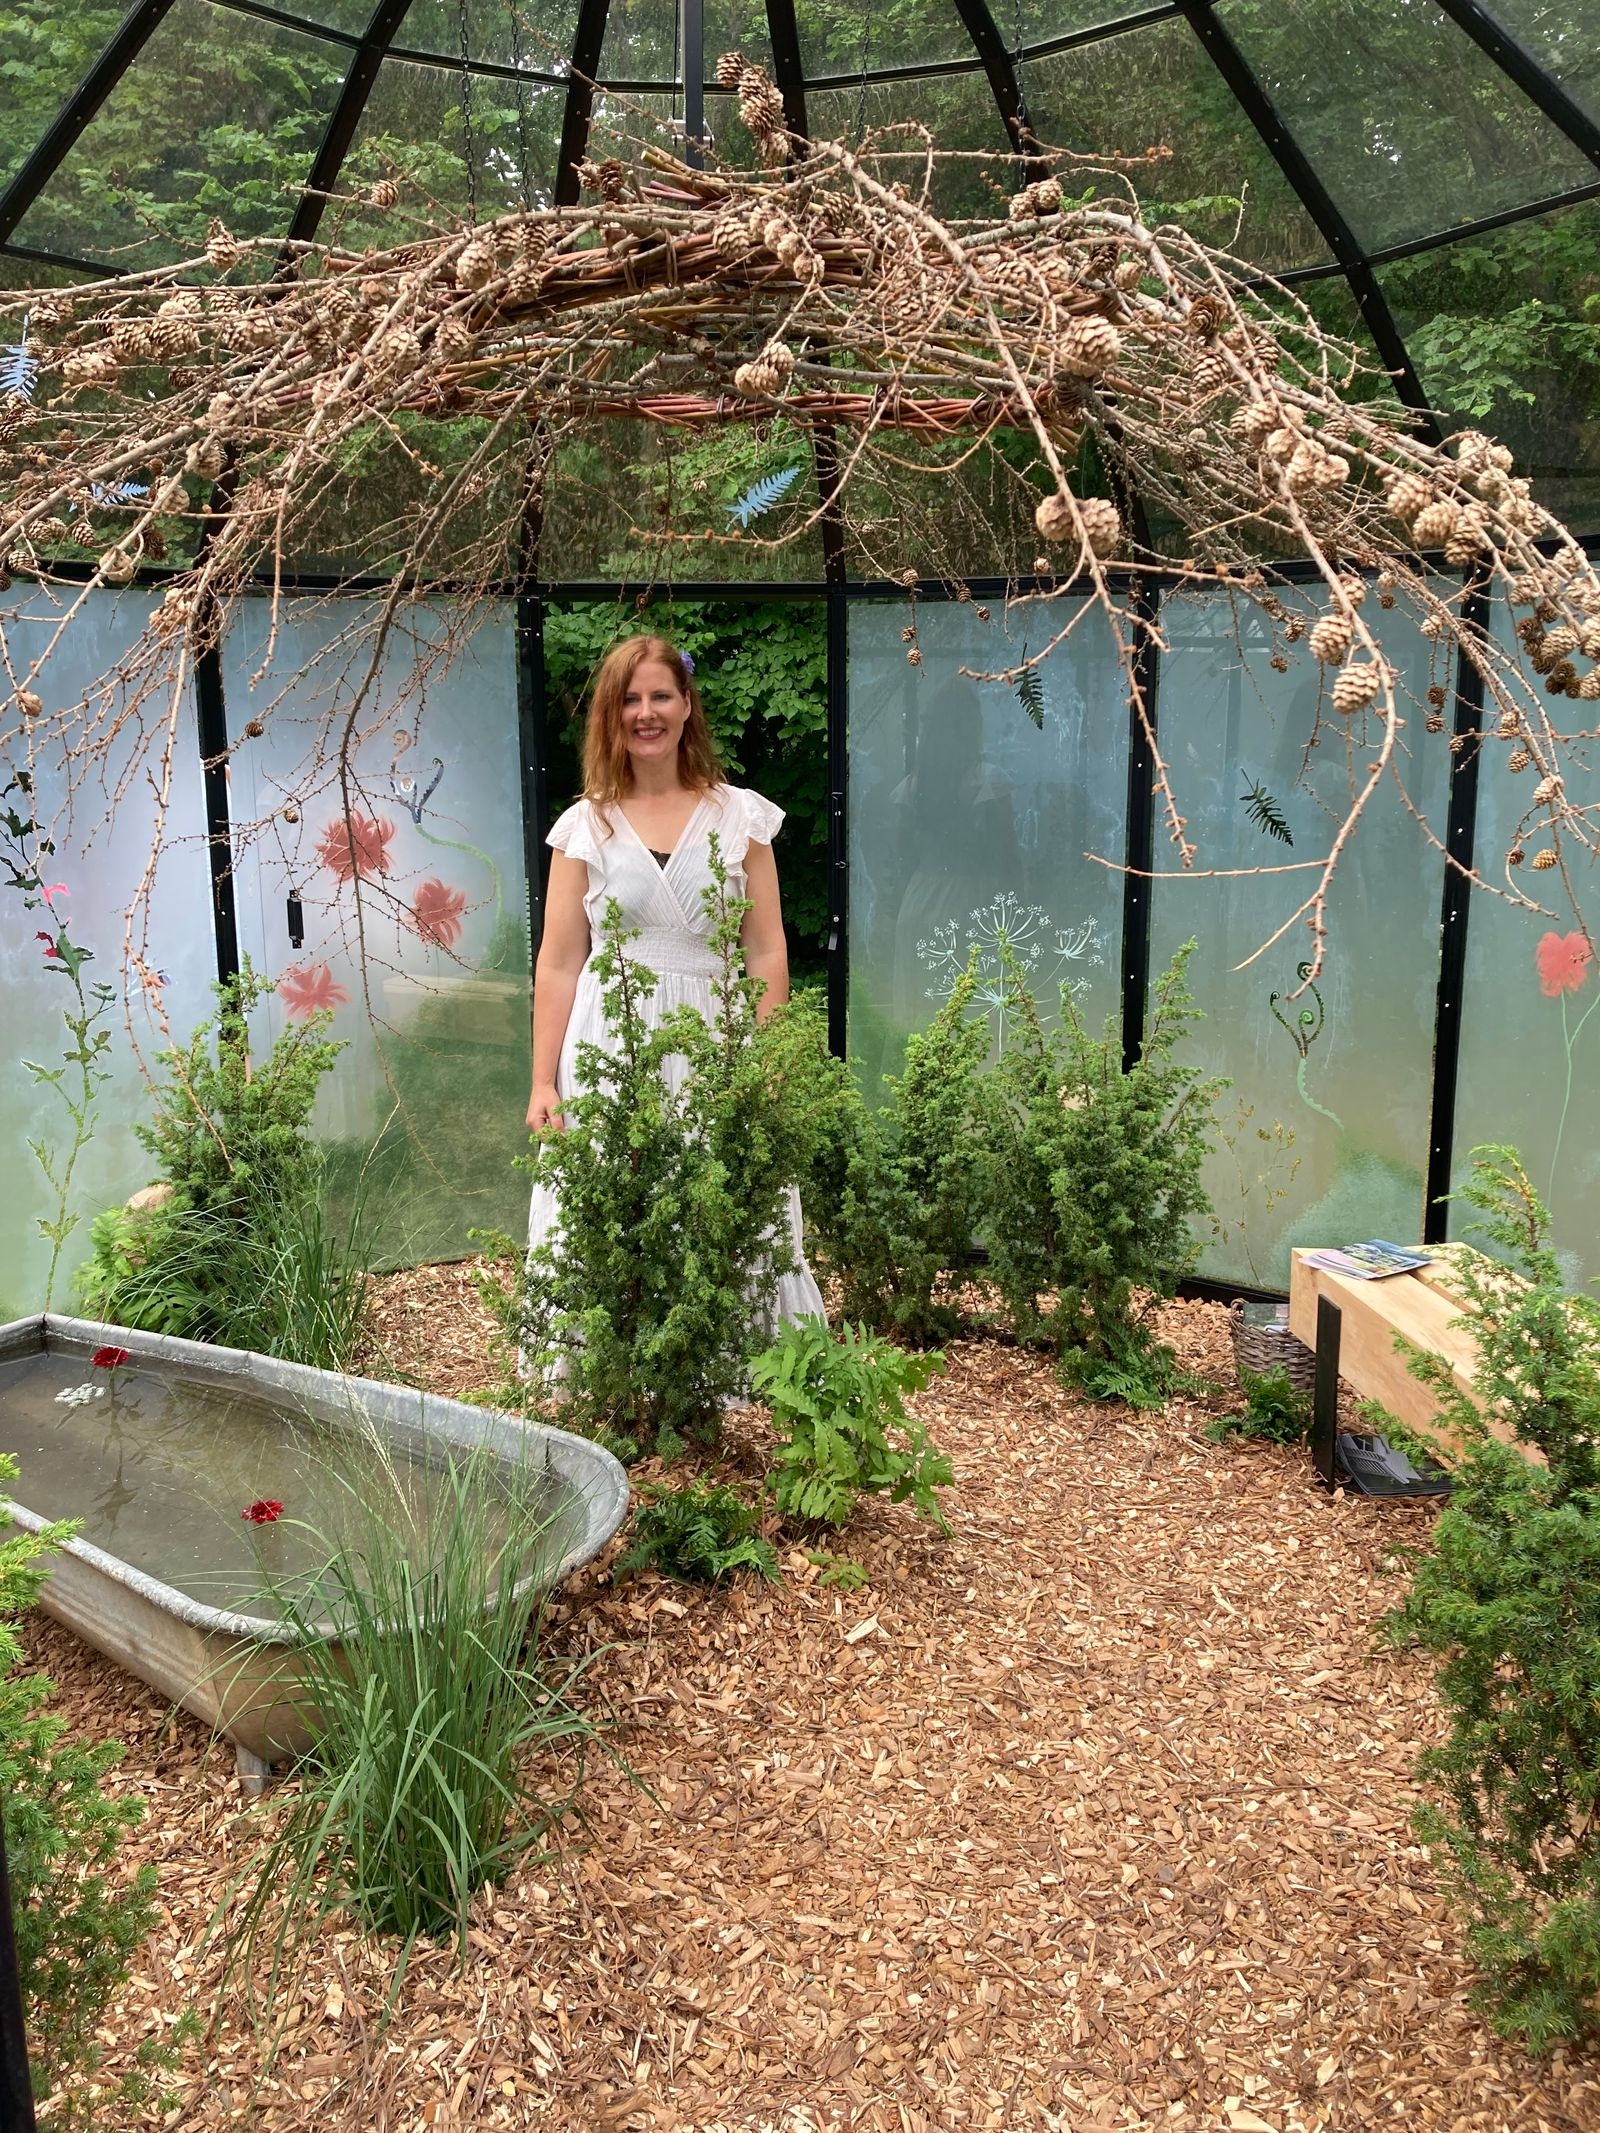 Underbar doft av eneflis möter besökaren! Trädgårdskreatören Kajsa Vildängens vitmålade glaspartier skapade ett hemligt, förtroligt växthus.